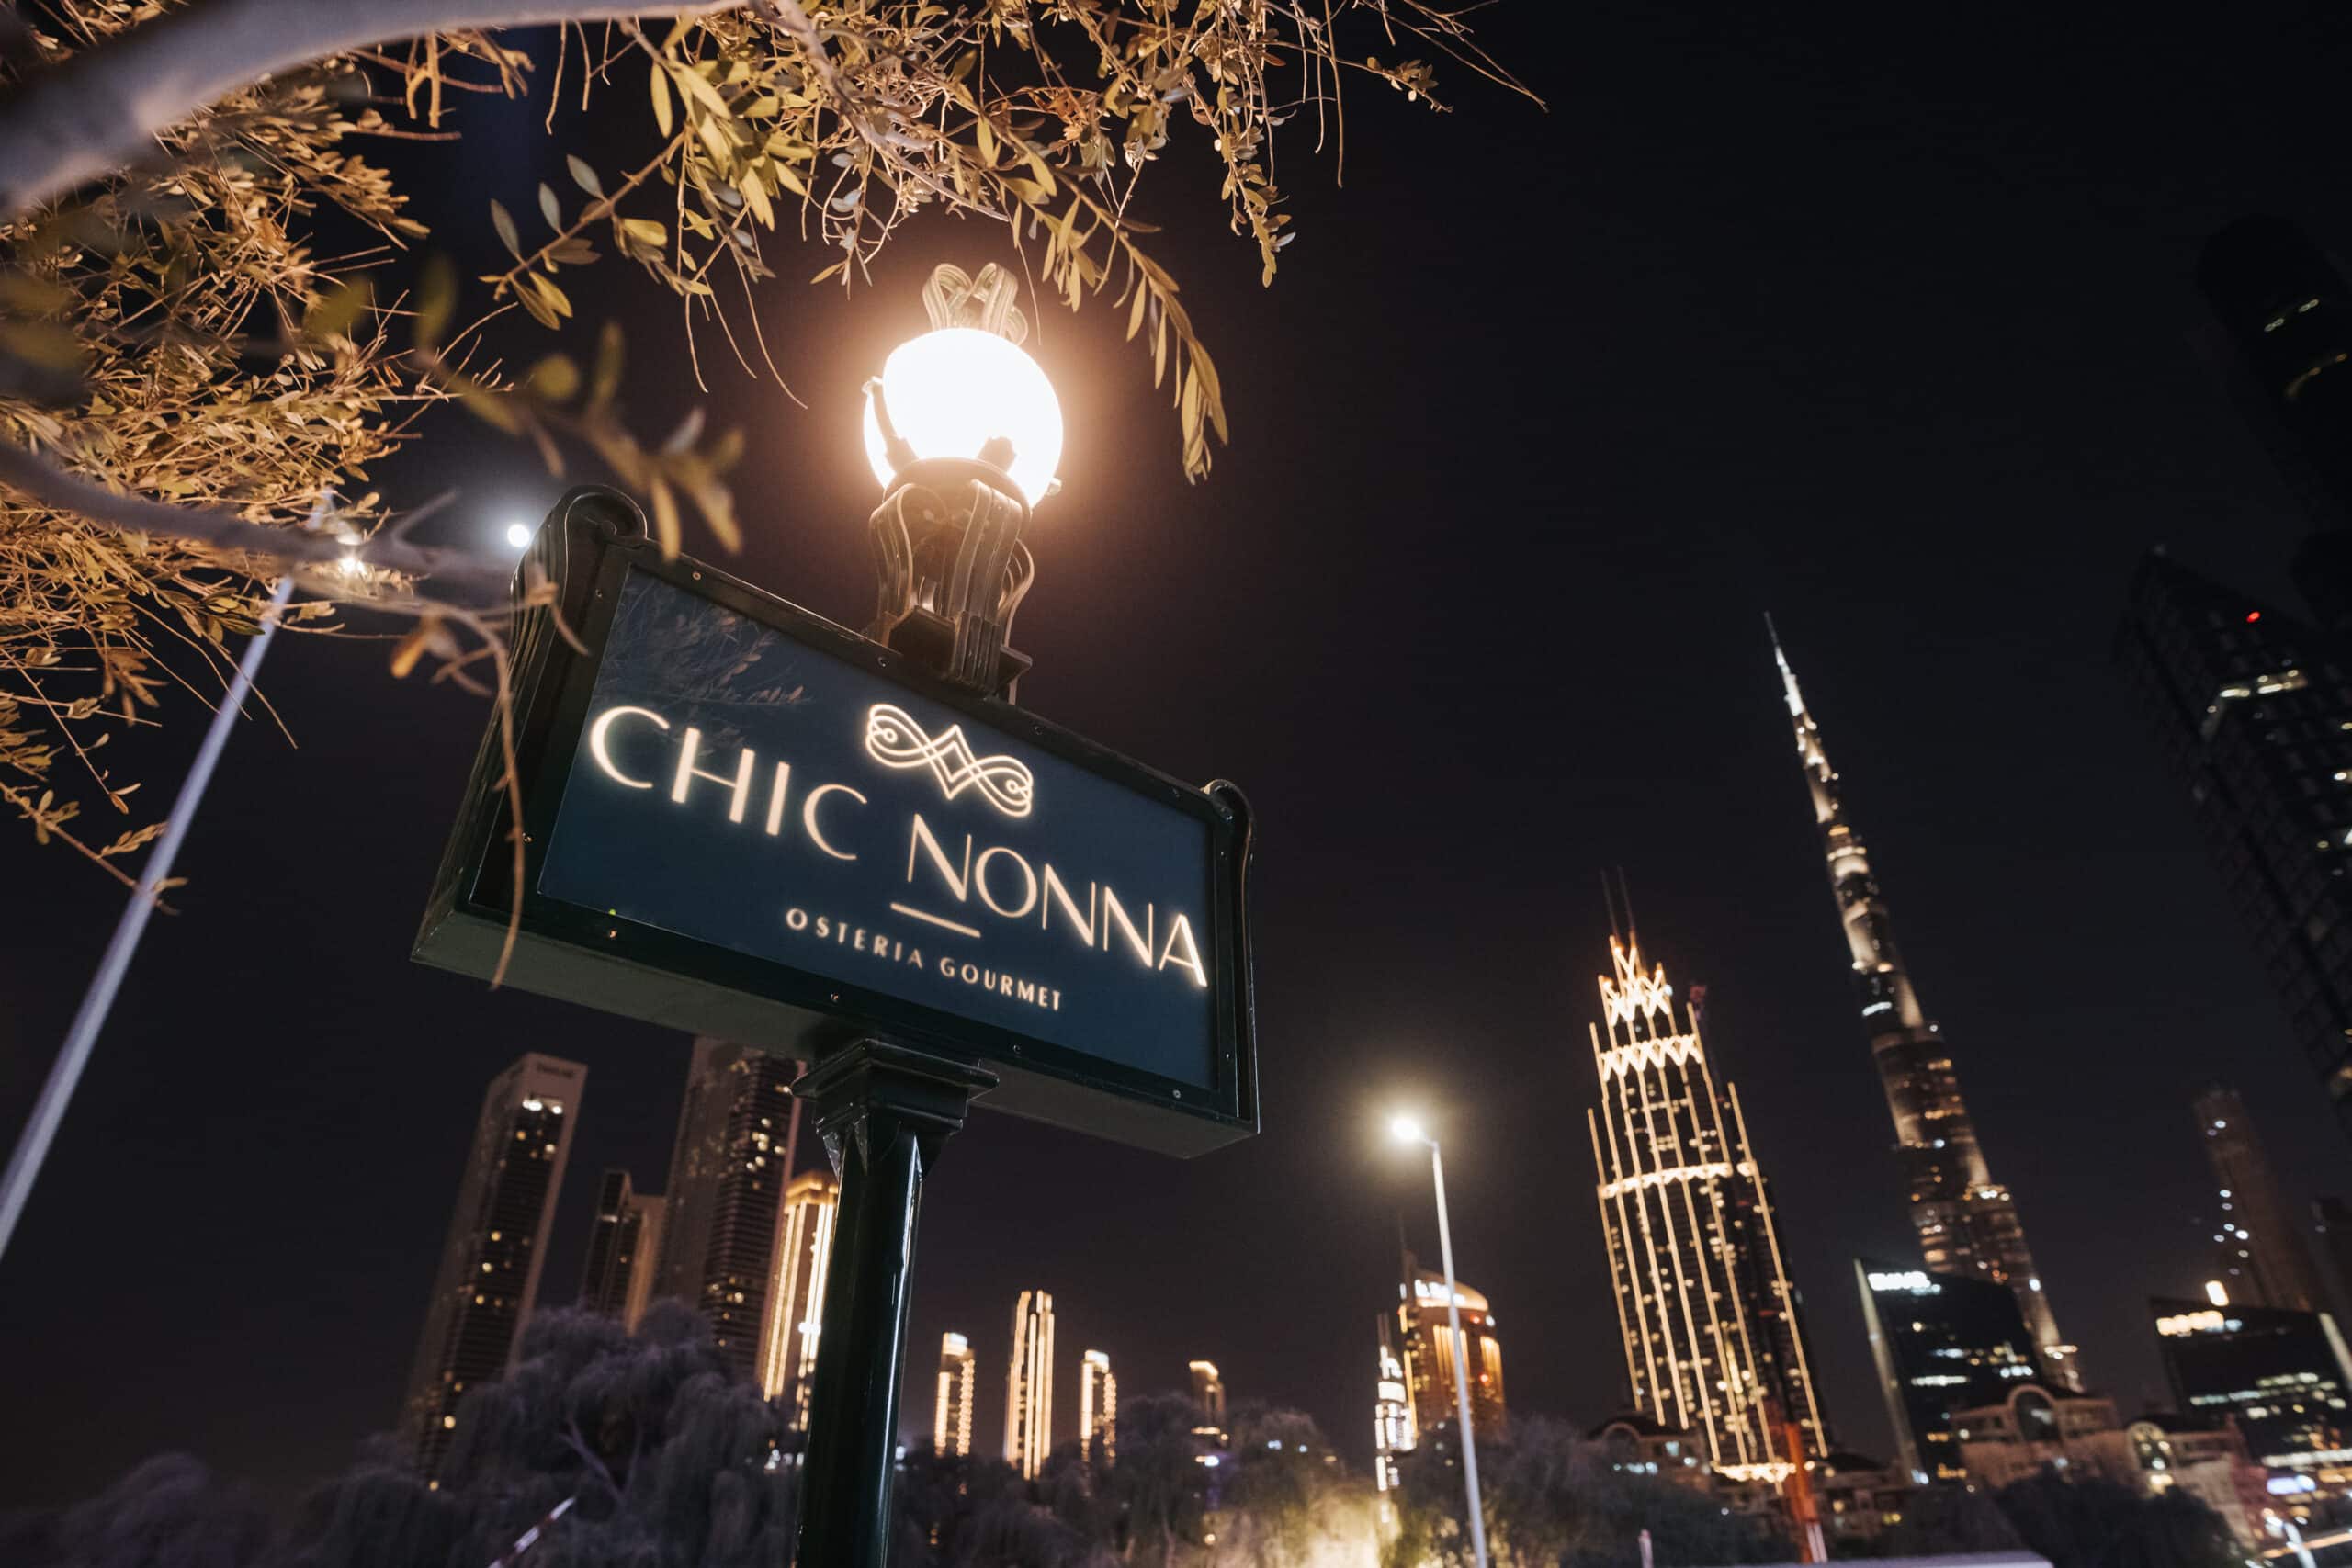 ZUMA DUBAI - Dubai International Financial Centre (DIFC) - Menu, Prices &  Restaurant Reviews - Tripadvisor